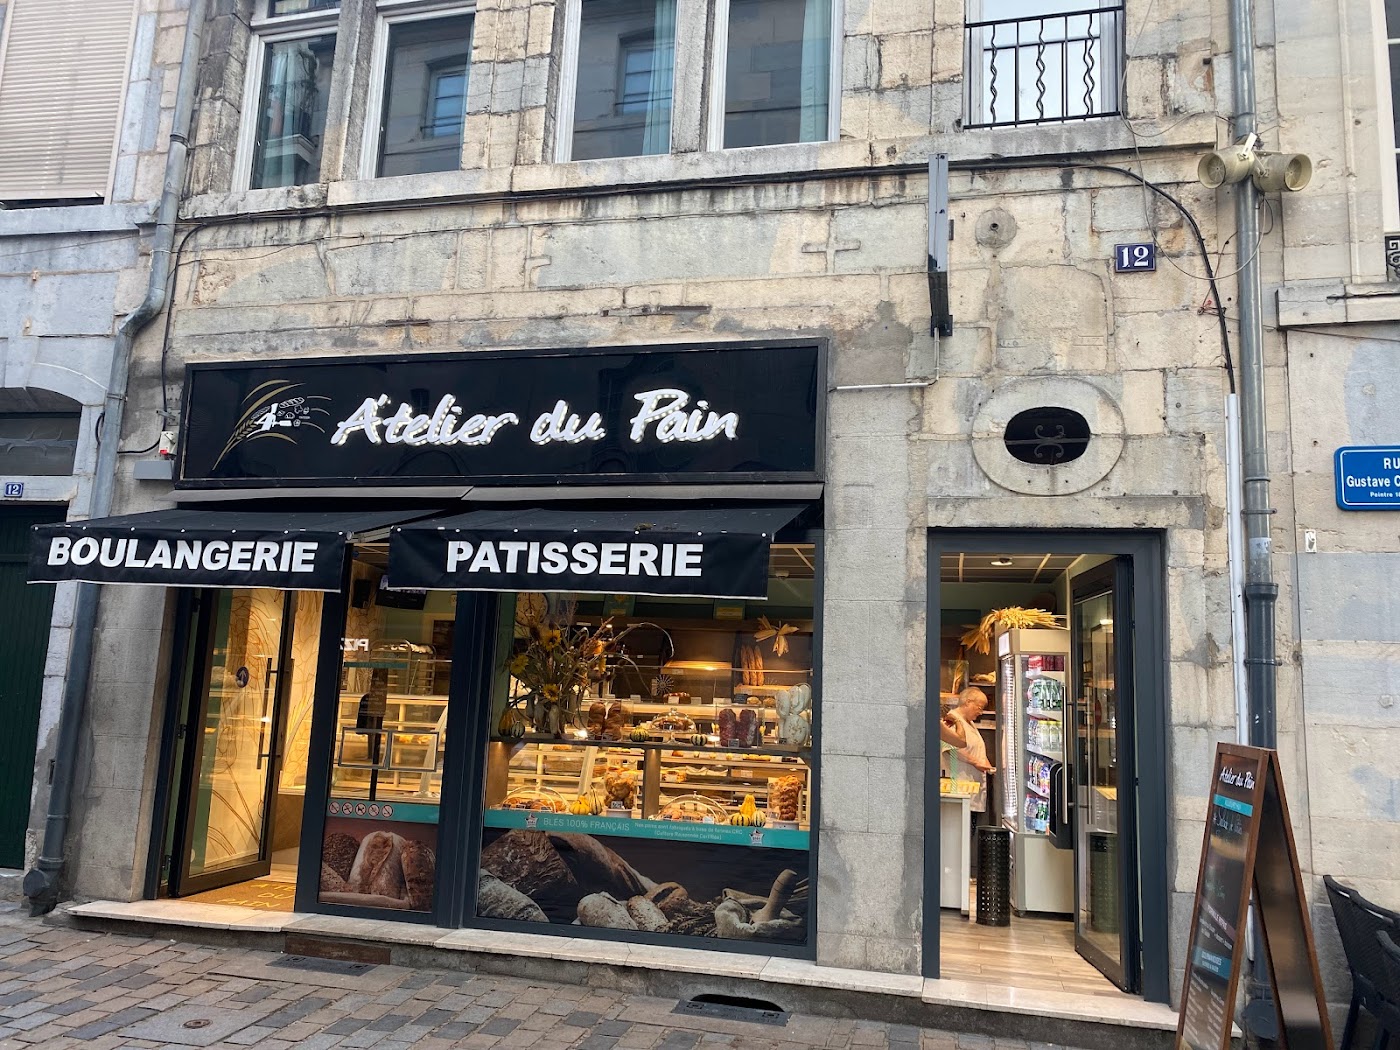 Boulangerie Pâtisserie "A'telier du Pain"